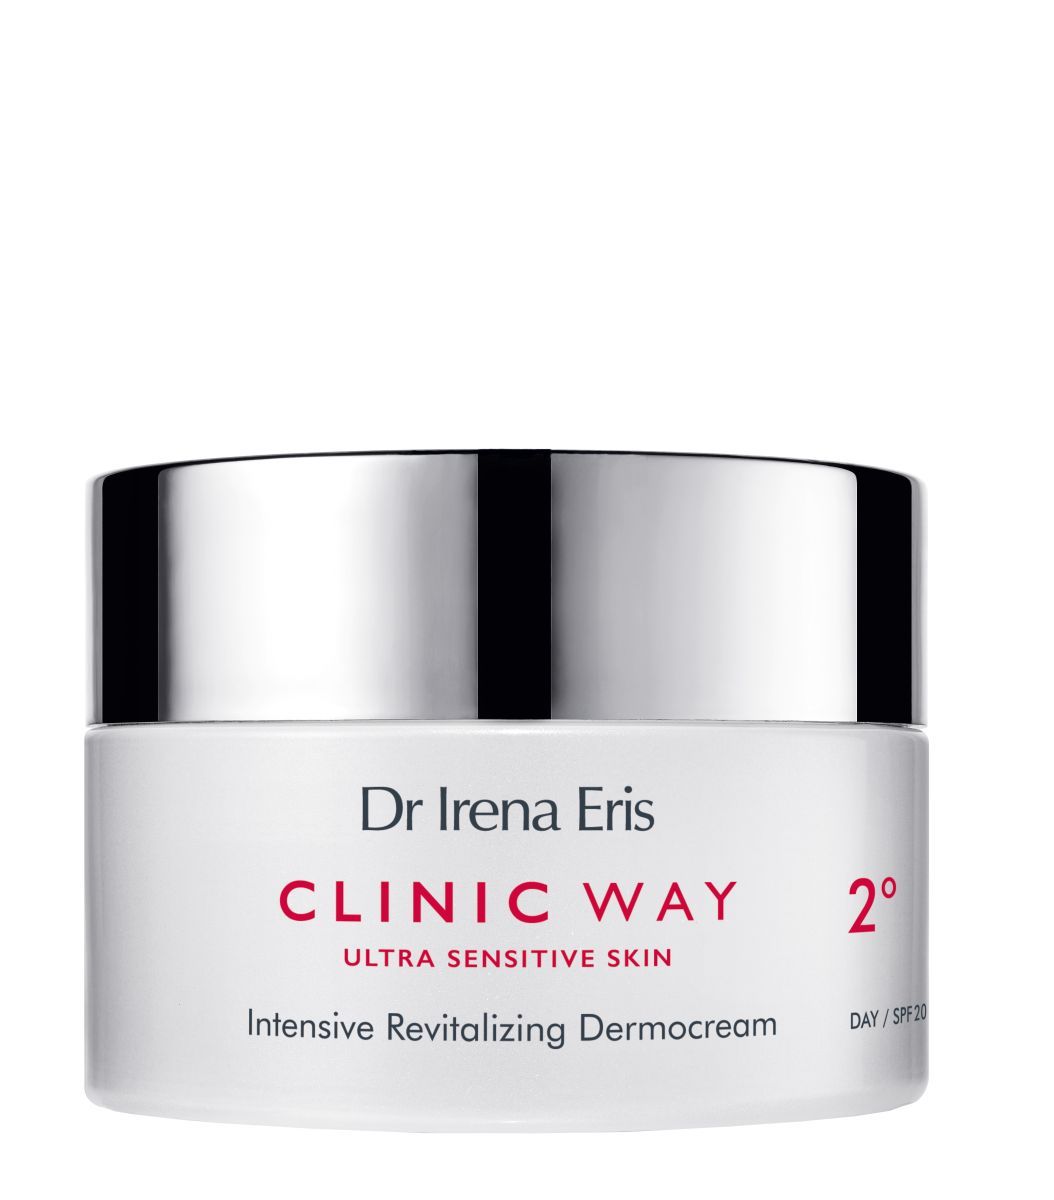 Dr Irena Eris Clinic Way Dermokrem 2° дневной крем для лица, 50 ml цена и фото